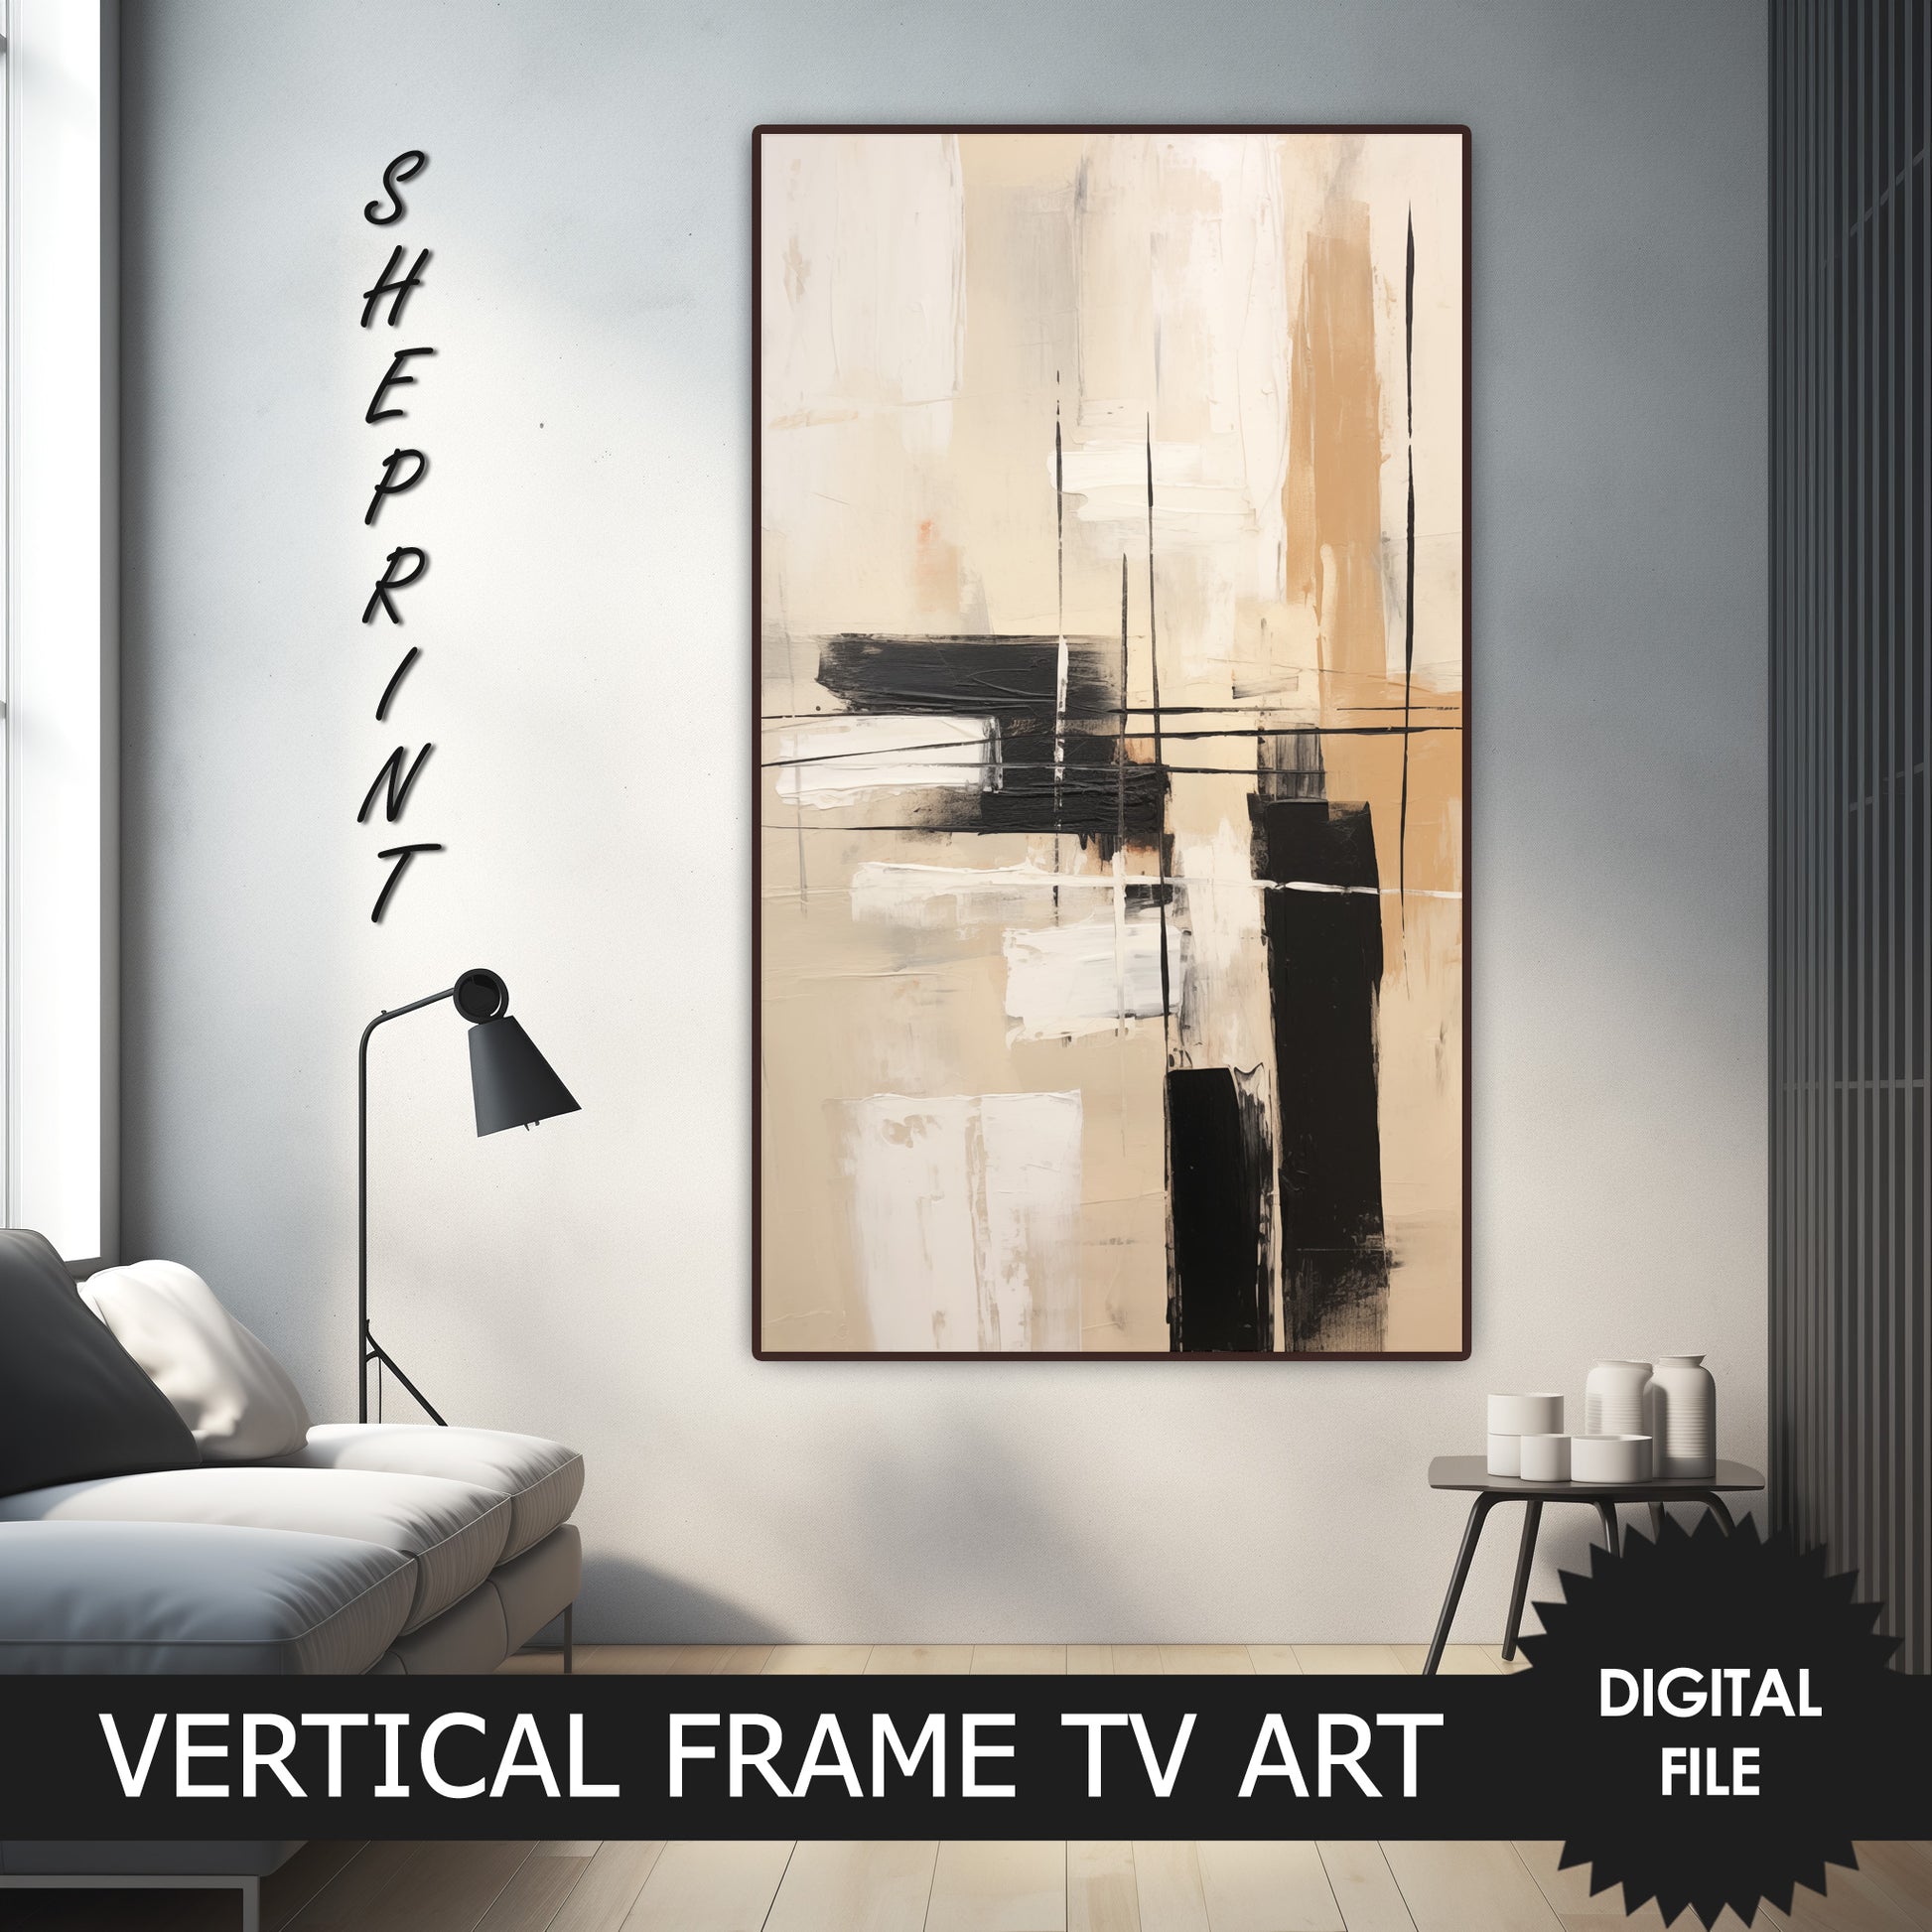 Vertical Frame TV Art, Beige Abstract Art, Modern Digital TV Art preview on Samsung Frame Tv when mounted vertically